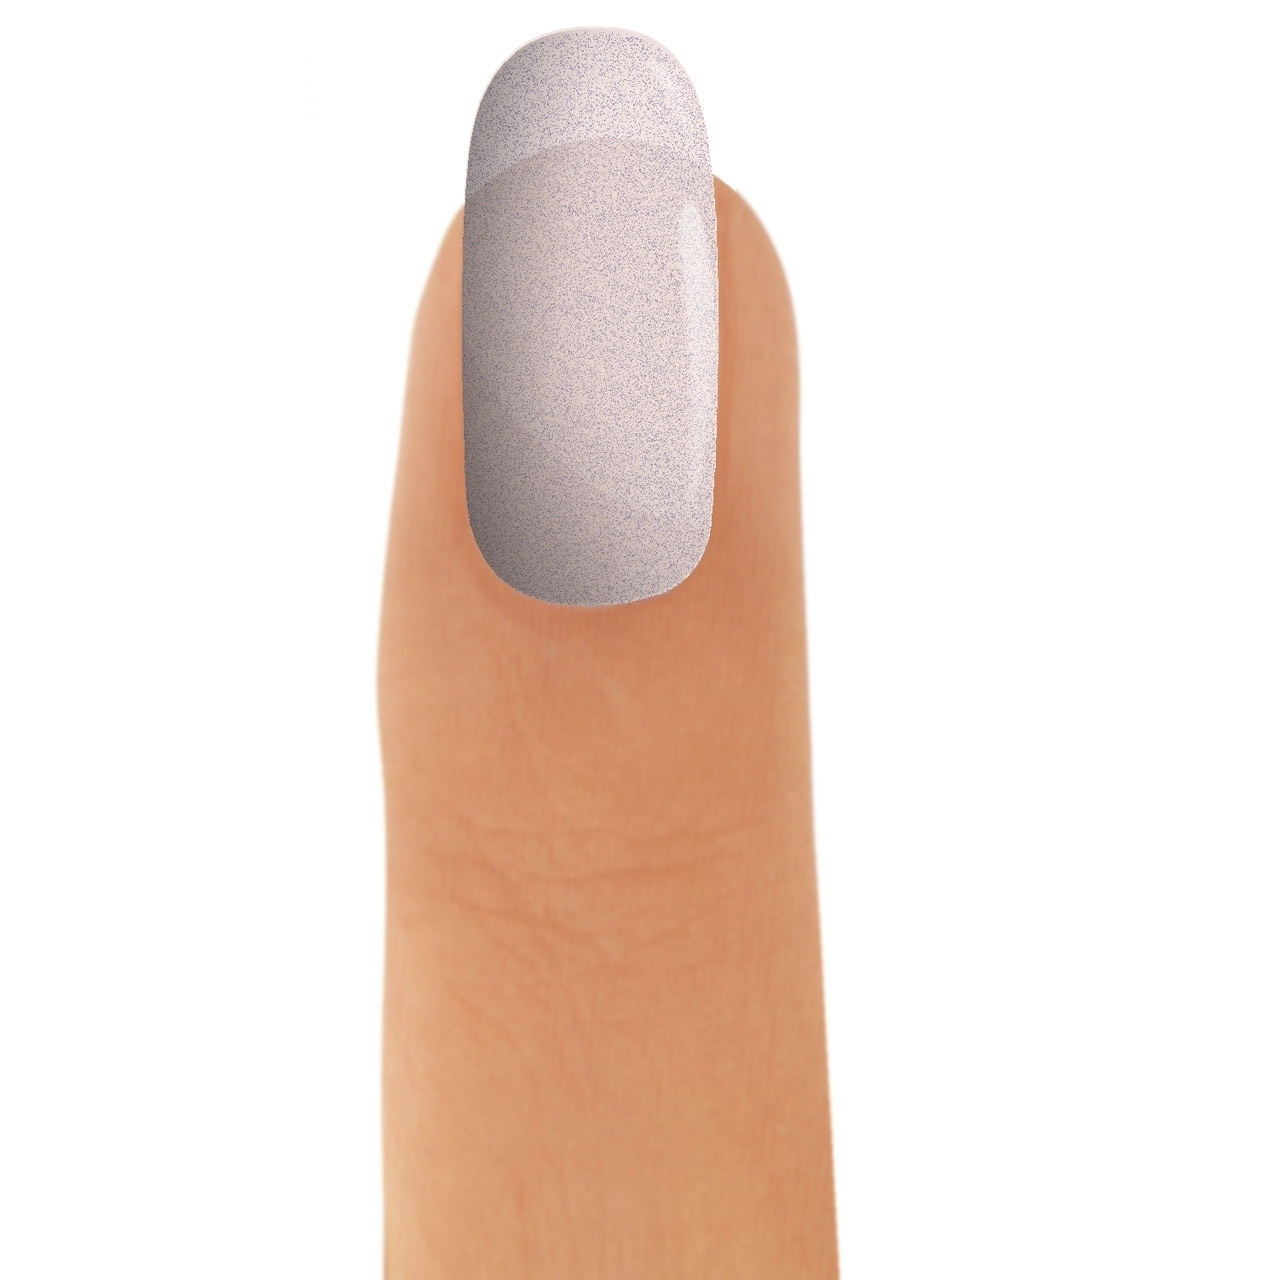 Detail Rissige Haut Finger Vitaminmangel Nomer 21